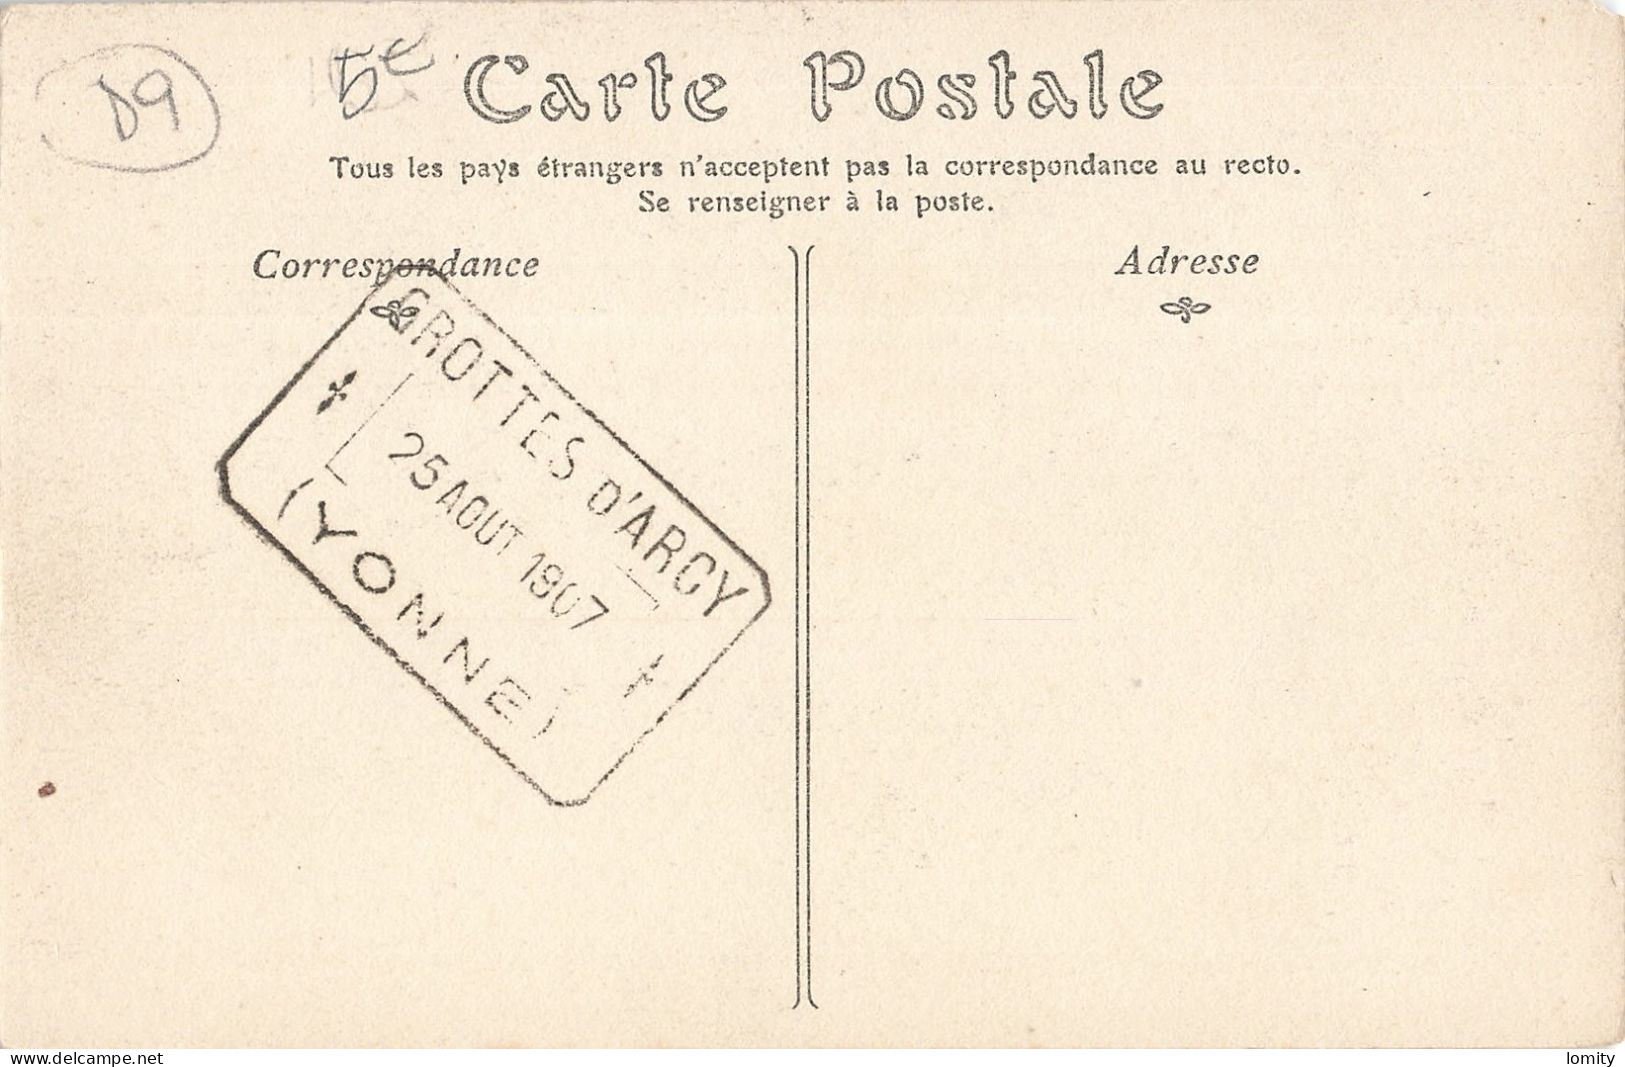 Destockage lot de 29 cartes postales CPA de l' Yonne Villeneuve Guyard Arcy sur Cure Cravant Joigny Sens Auxerre Avallon